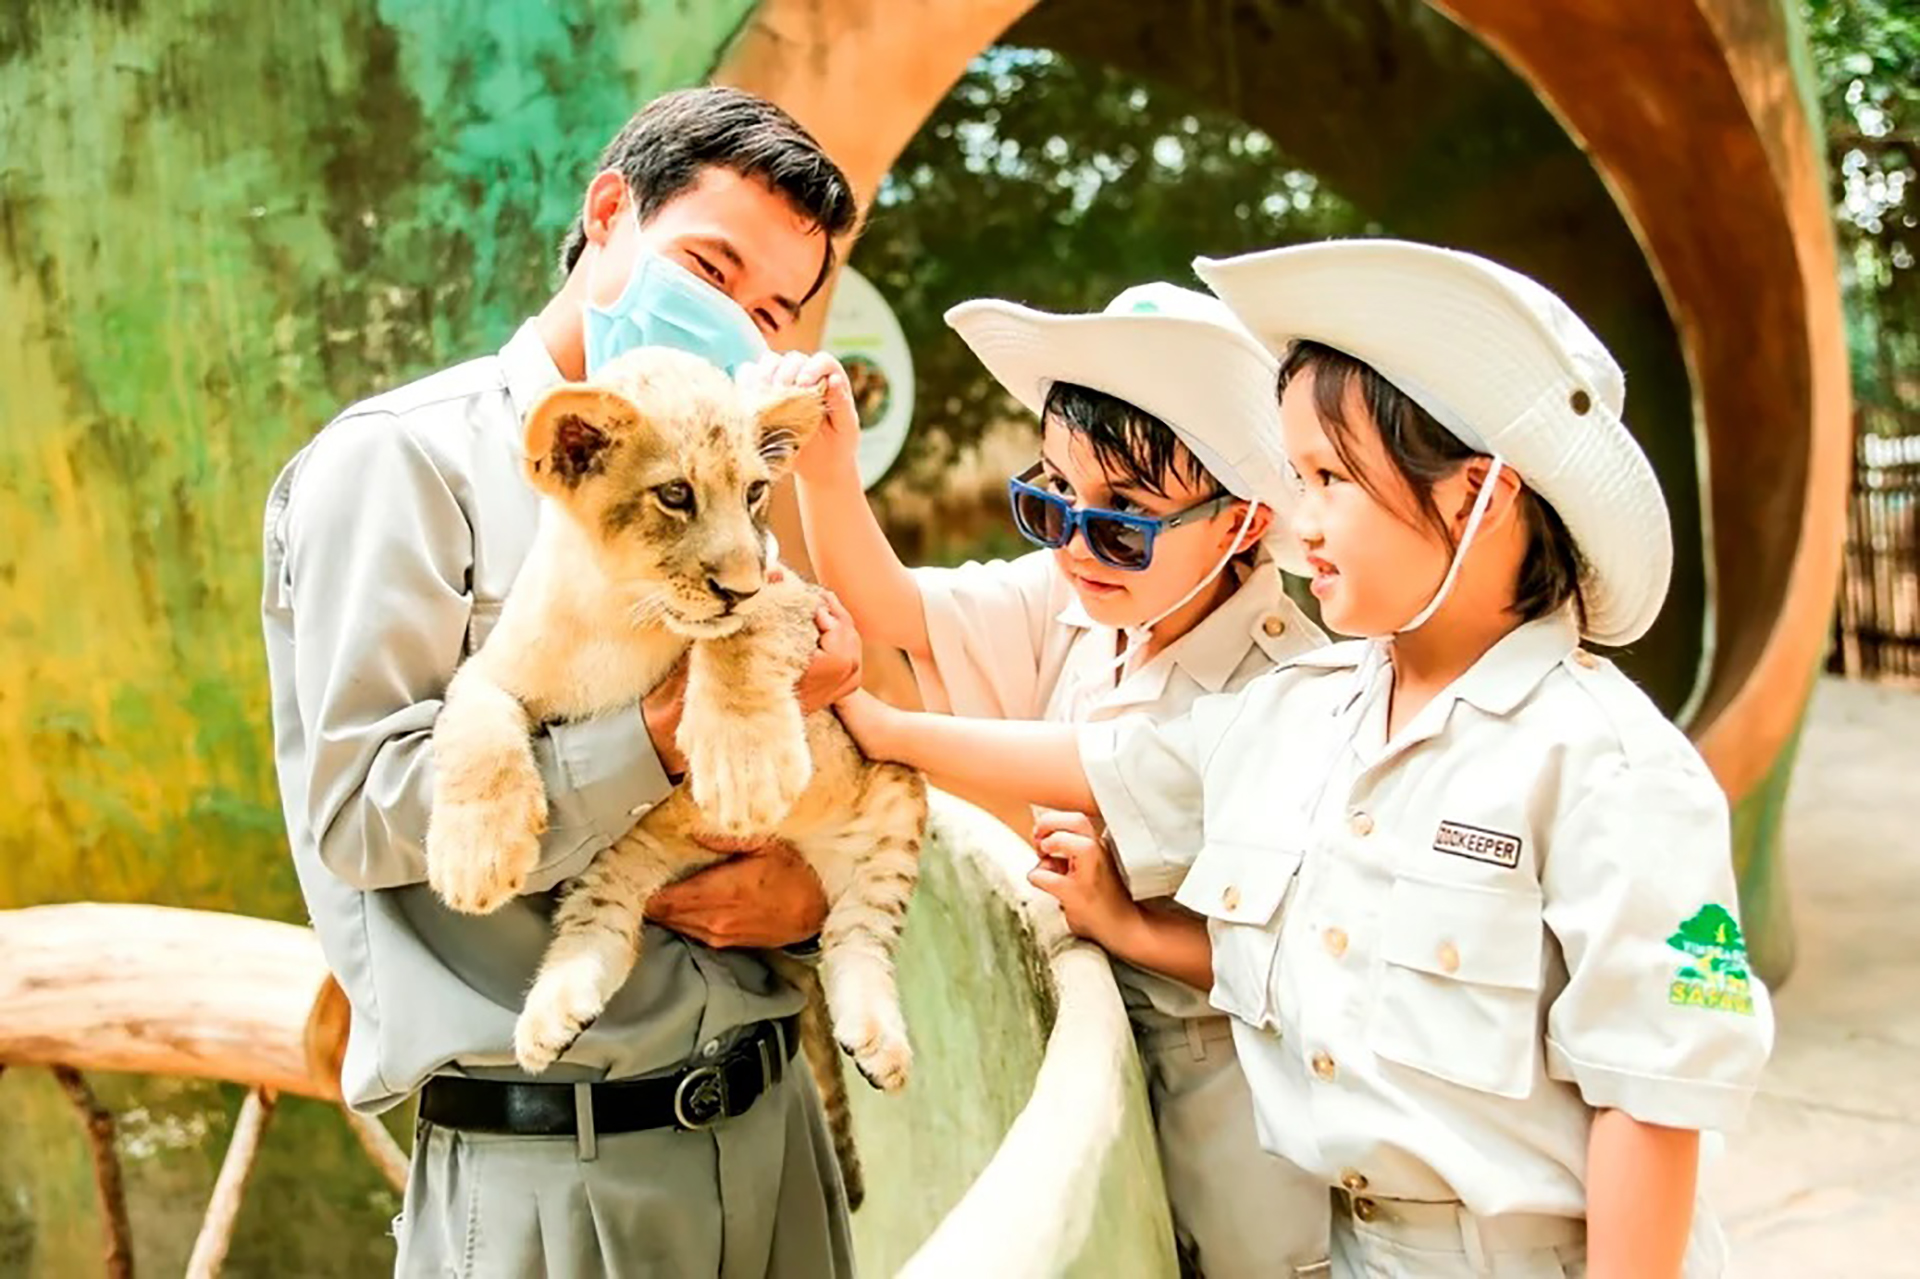 Siêu hot trải nghiệm ‘nhập vai bảo mẫu nhí’ cực hút khách tại Vinpearl Safari- Ảnh 4.